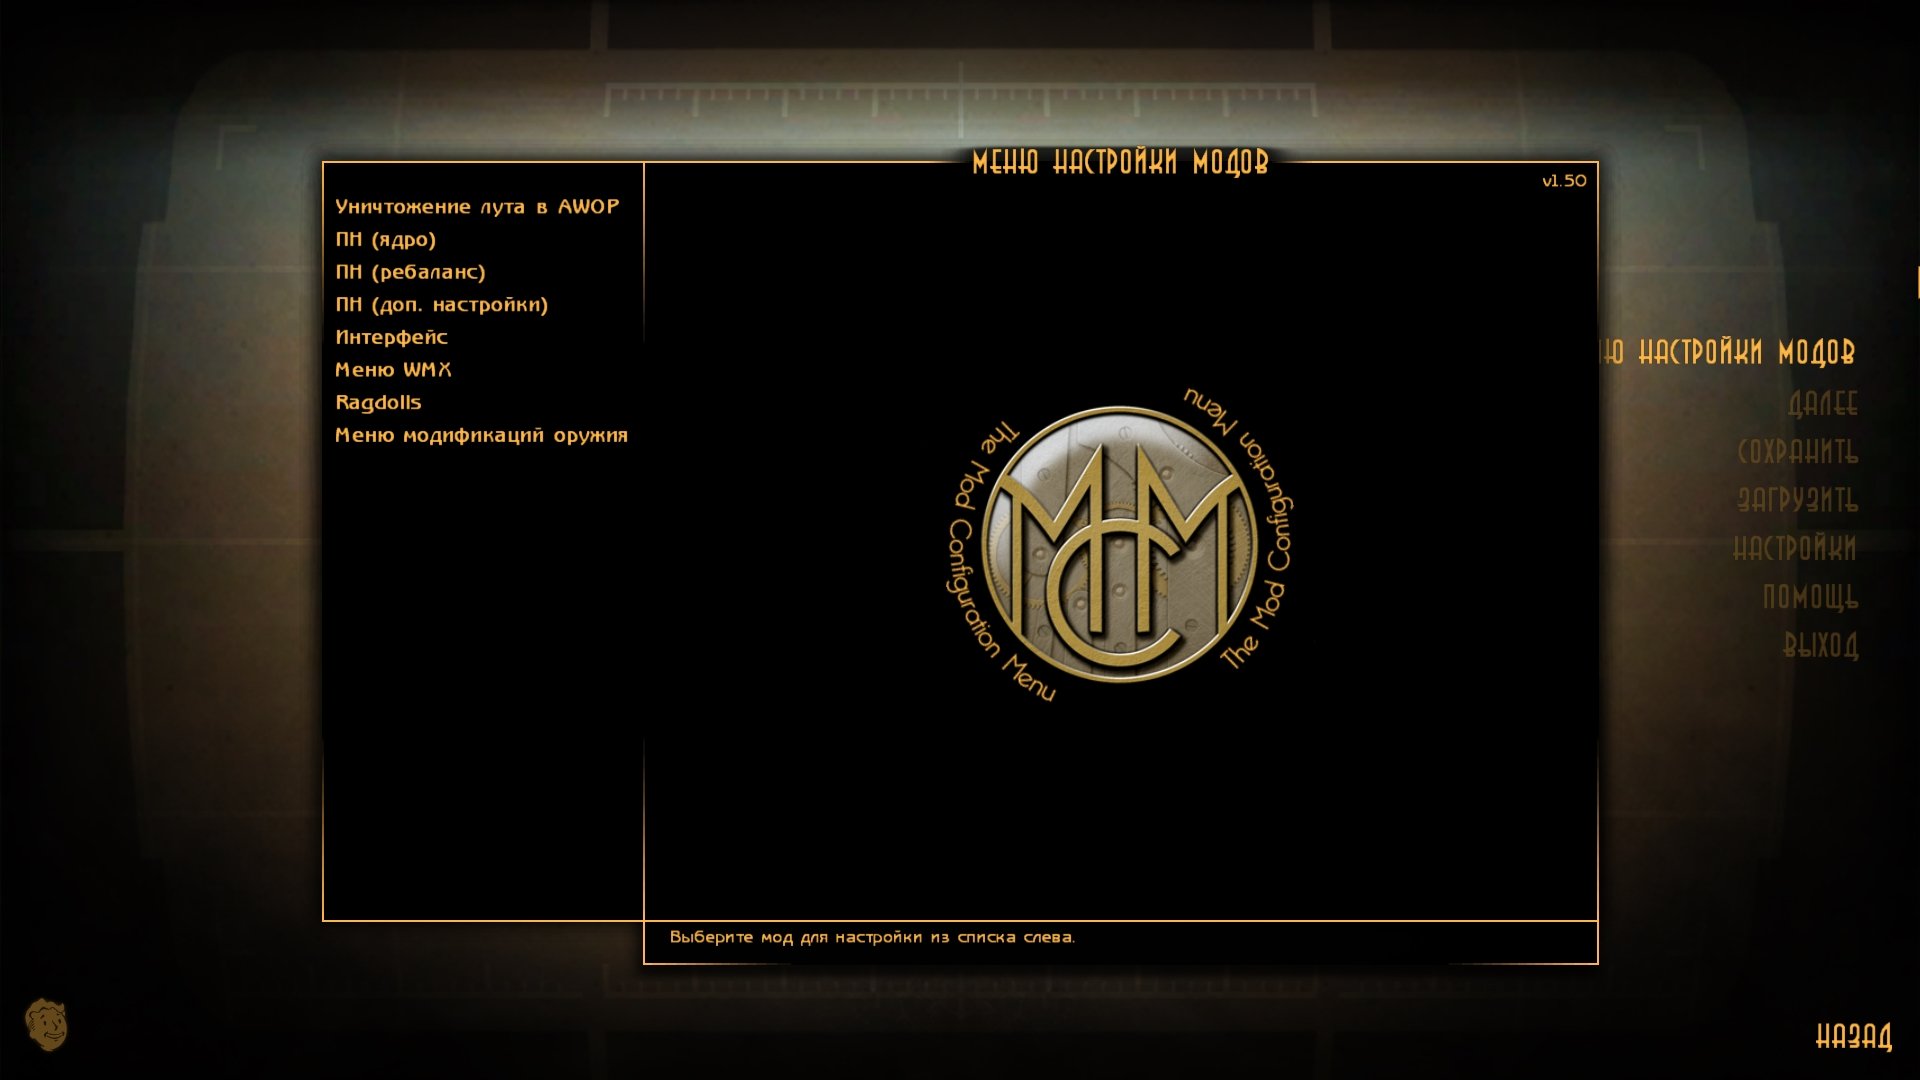 меню настройки модов мсм mod configuration menu fallout 4 фото 5